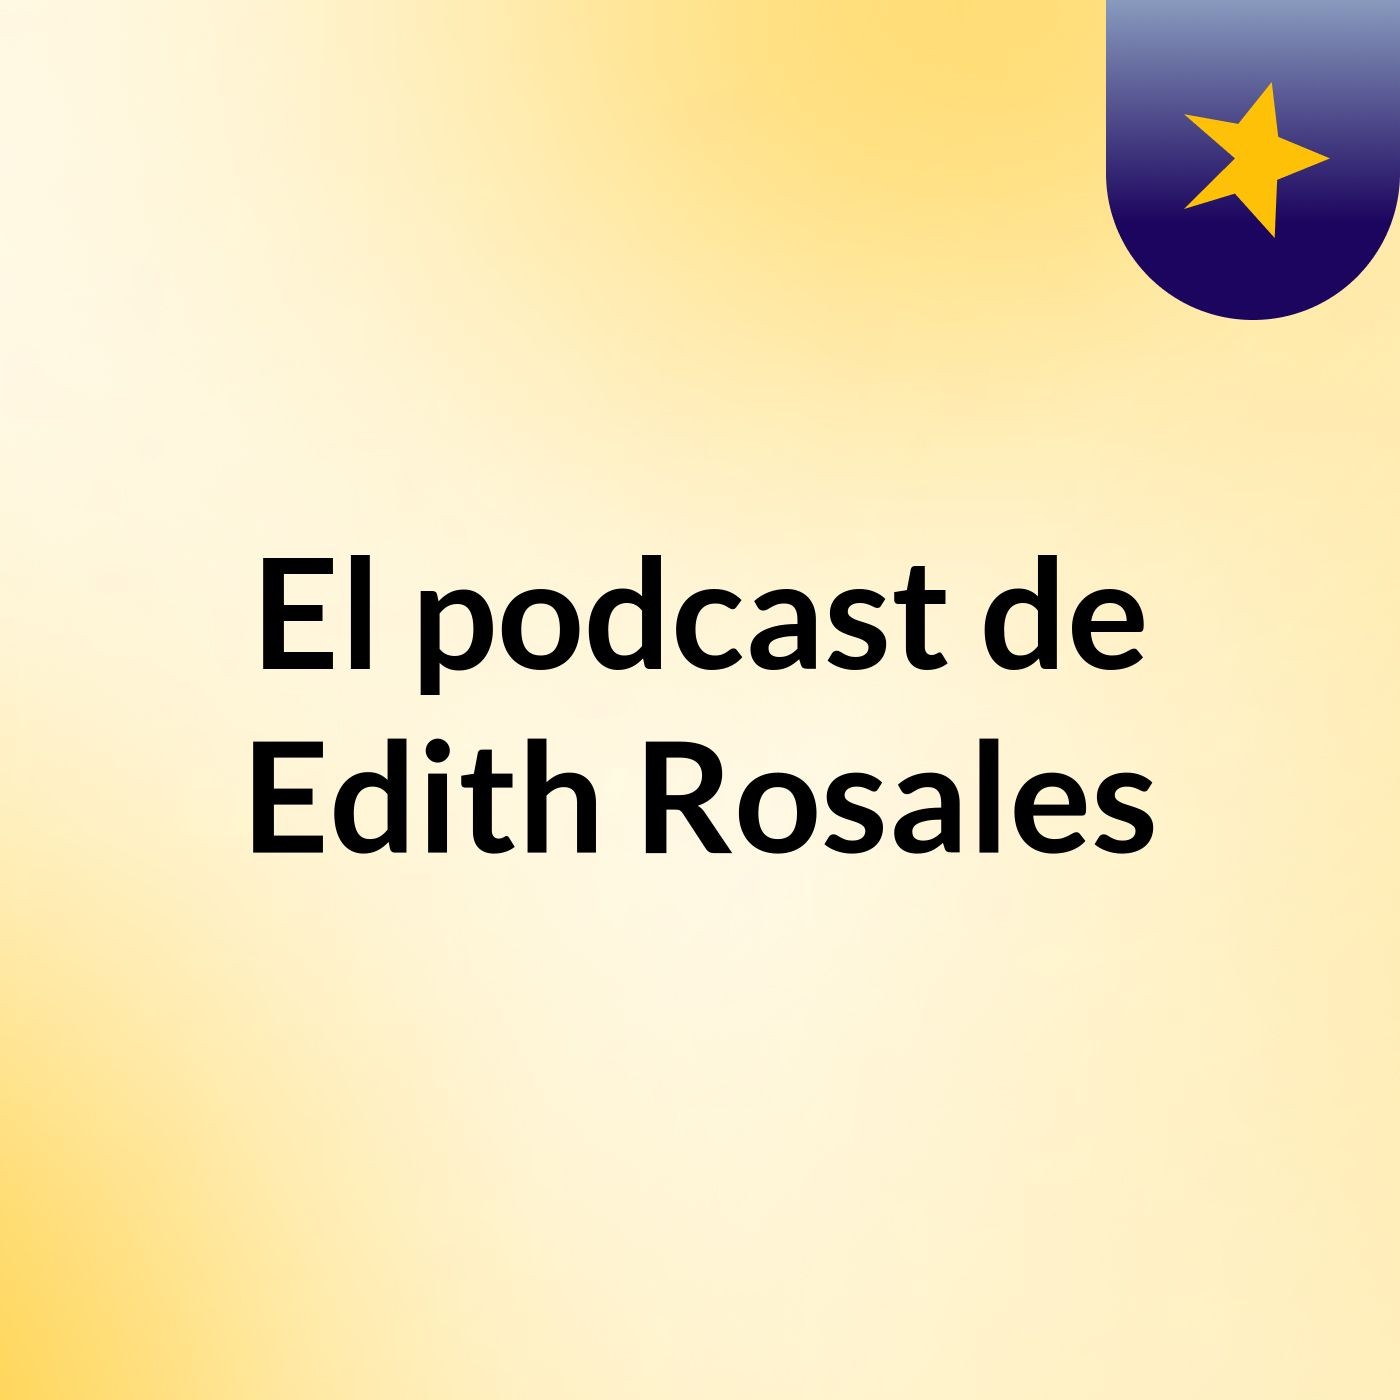 El podcast de Edith Rosales